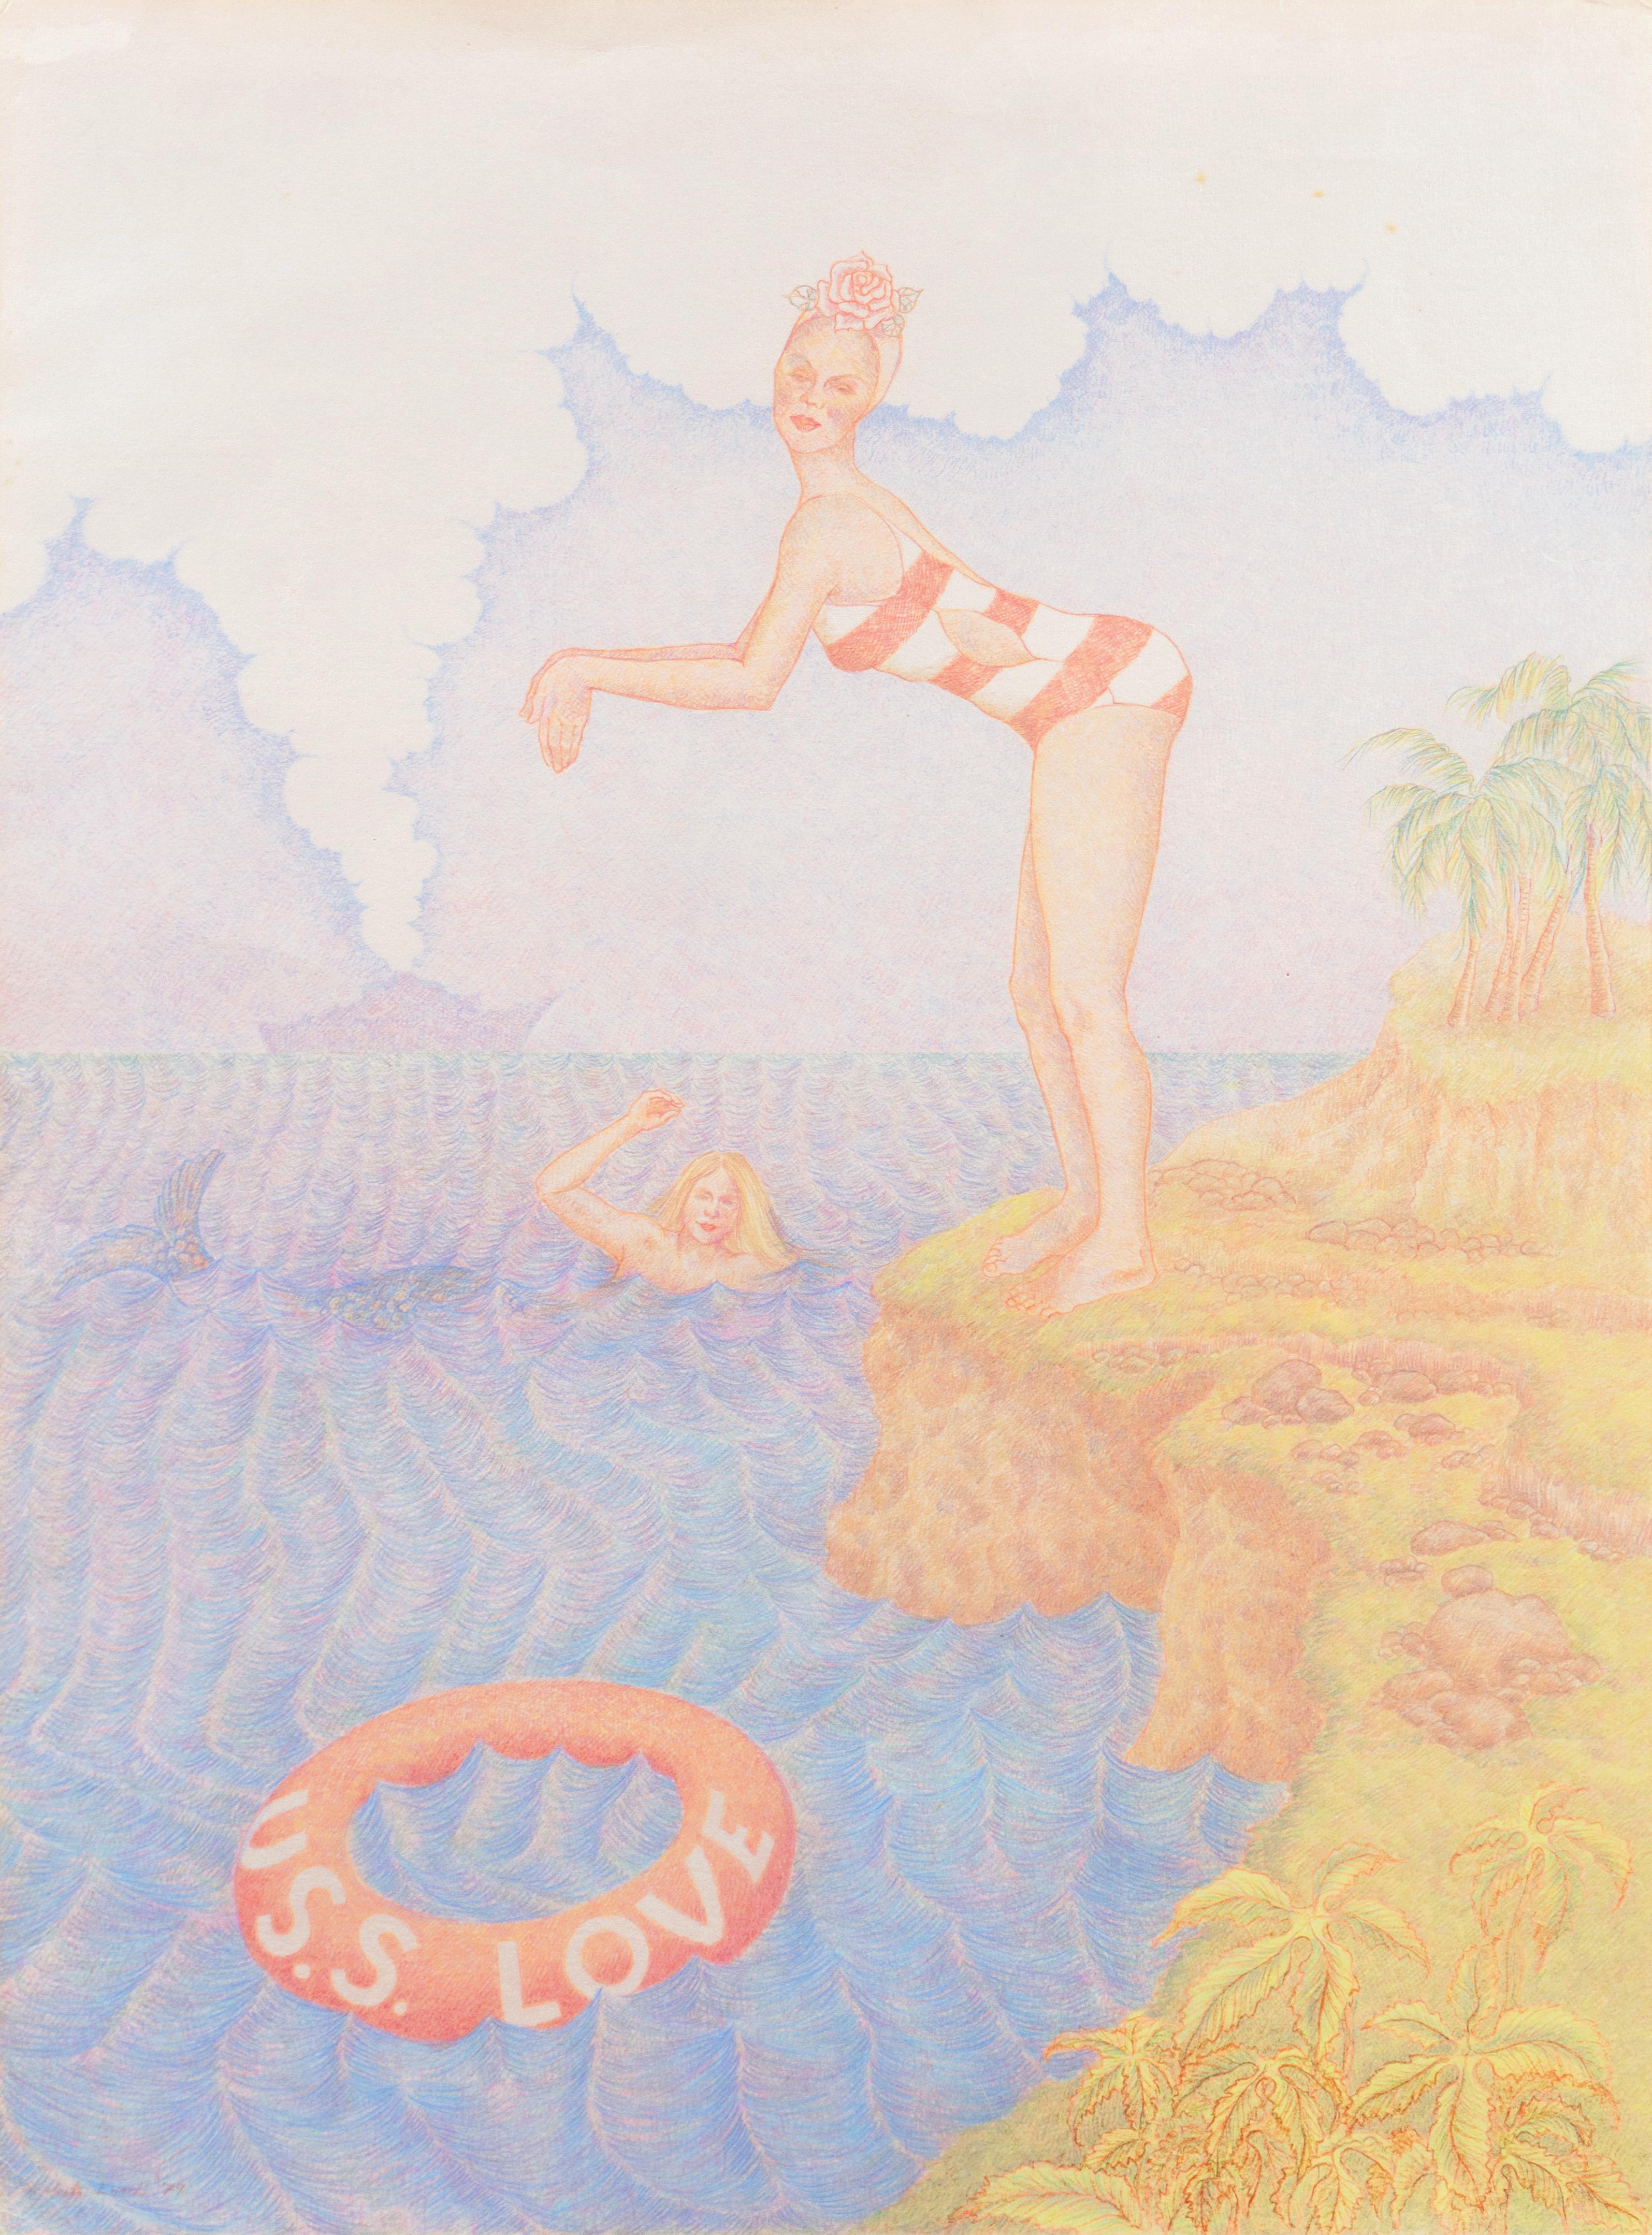 'U.S.S. Love', Swimming with Mermaids, Merman